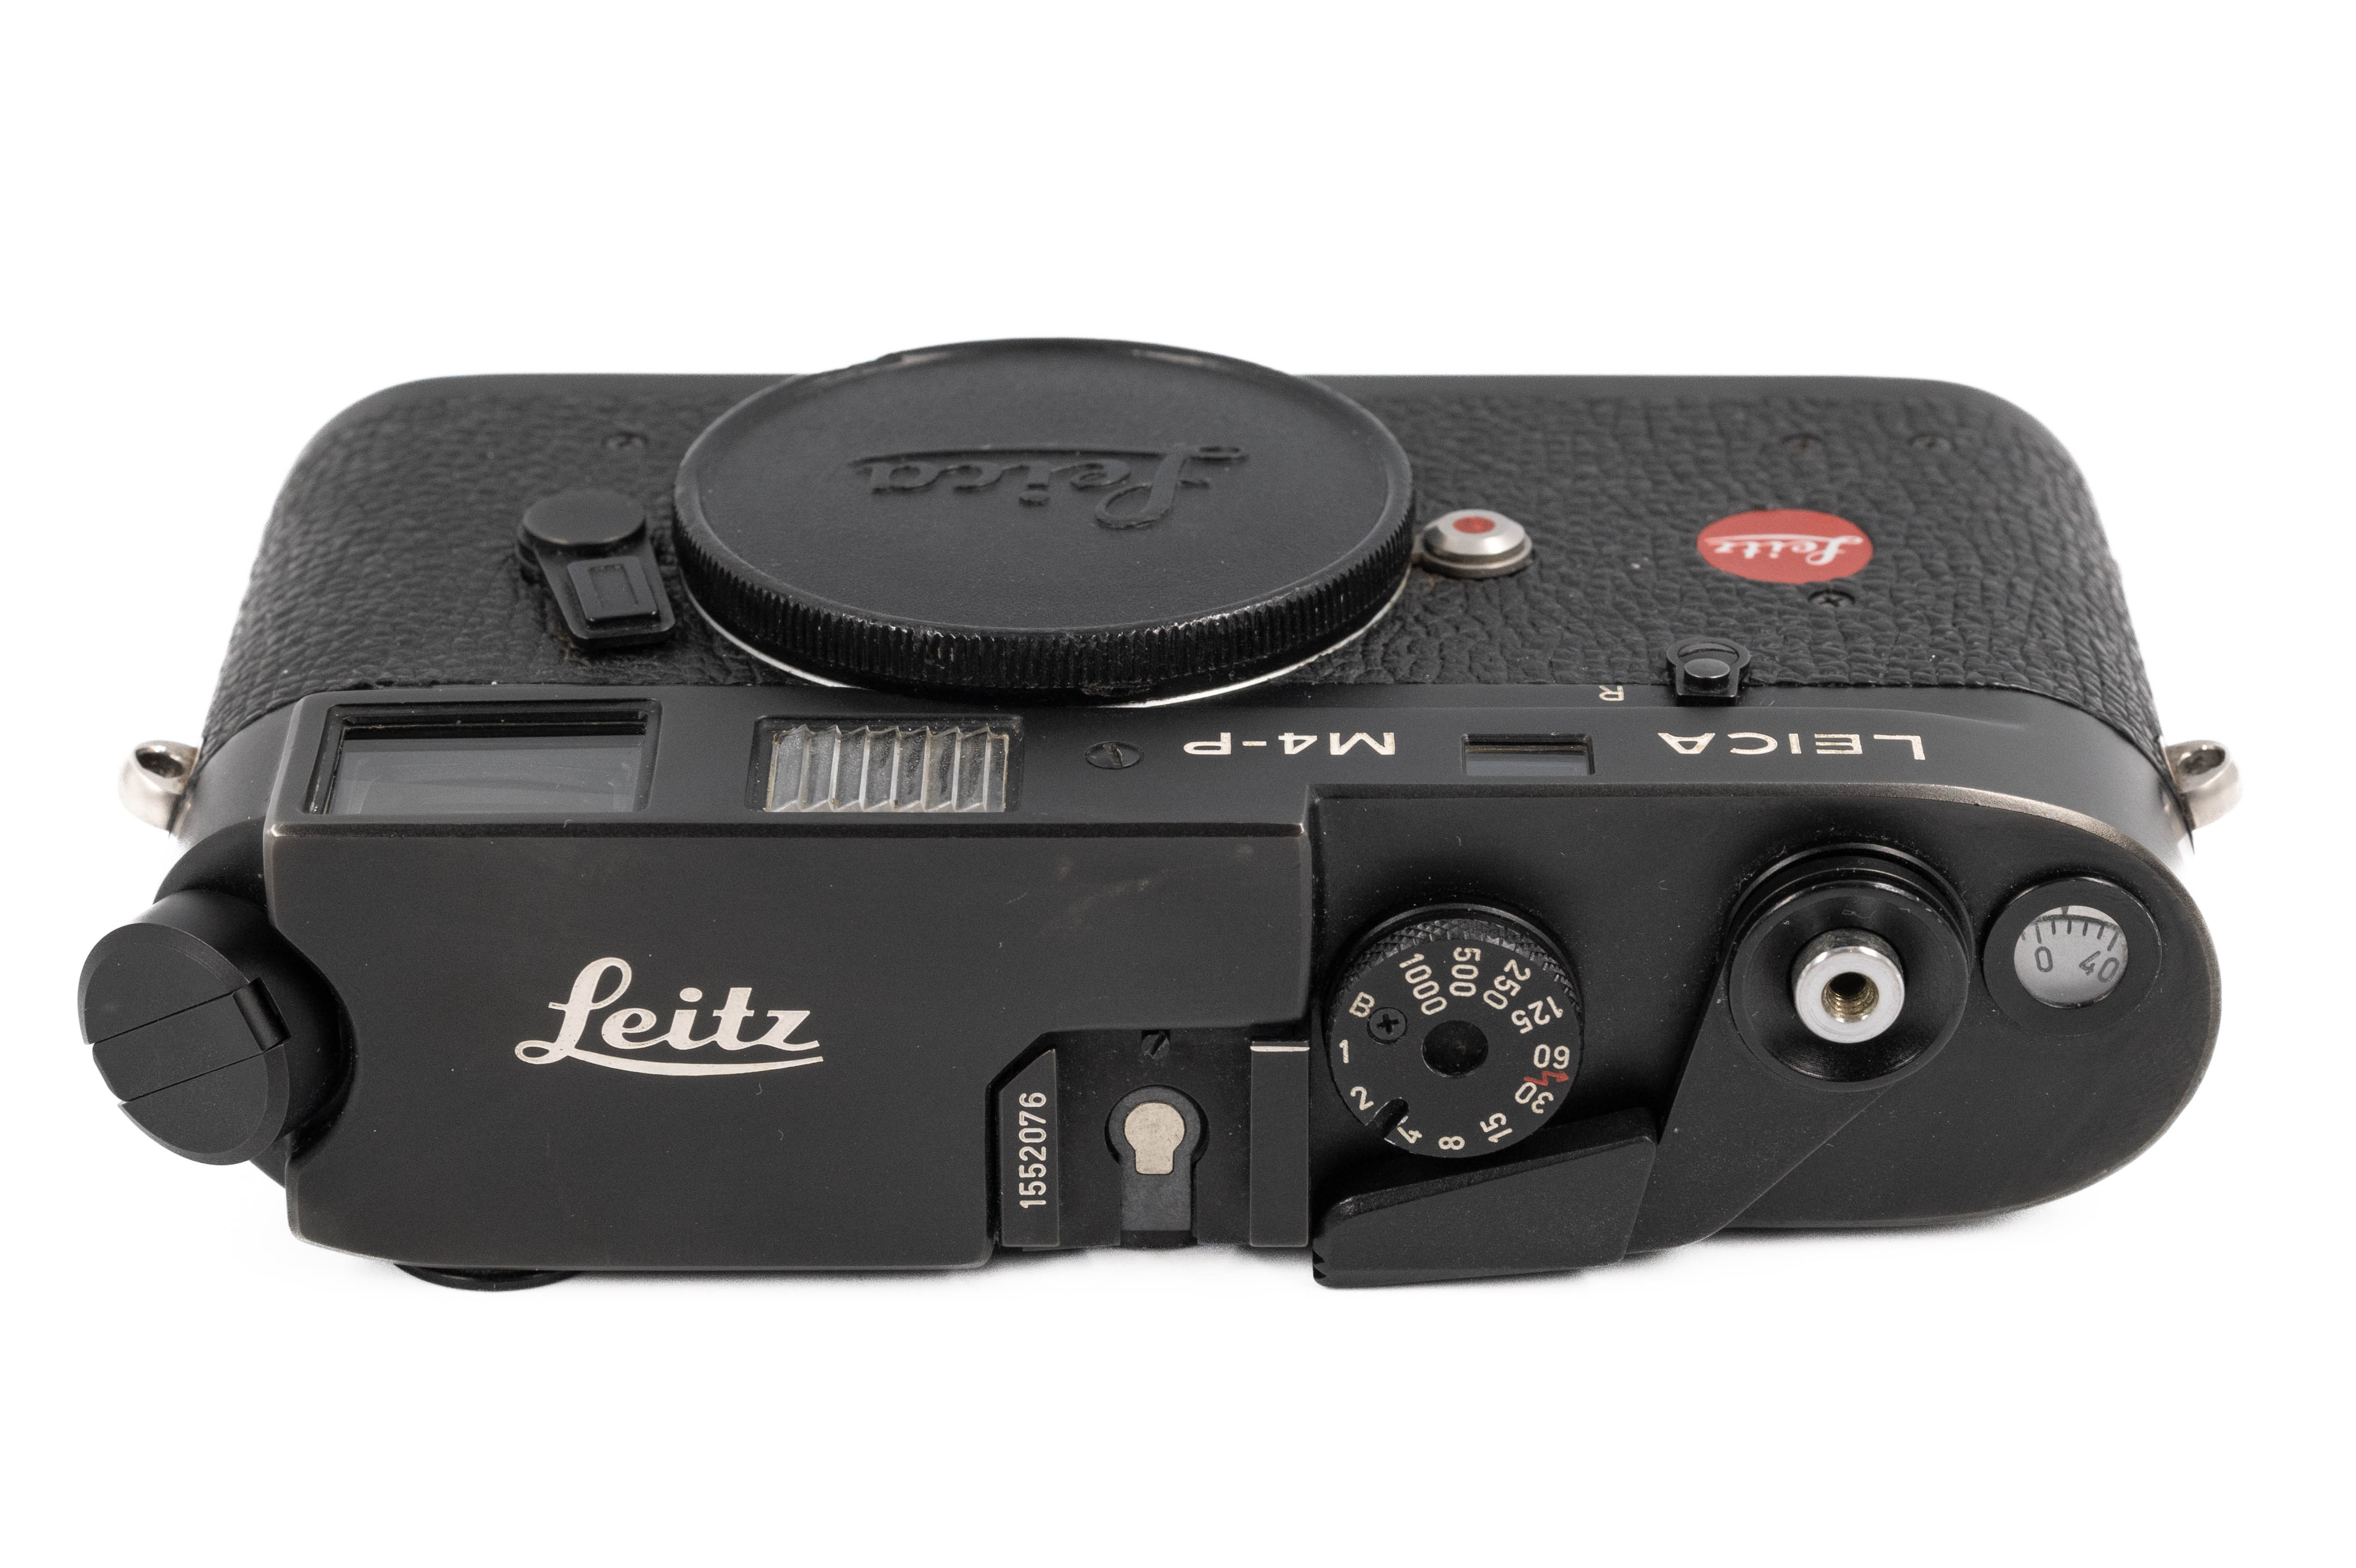 Leica M4-P Black 10415